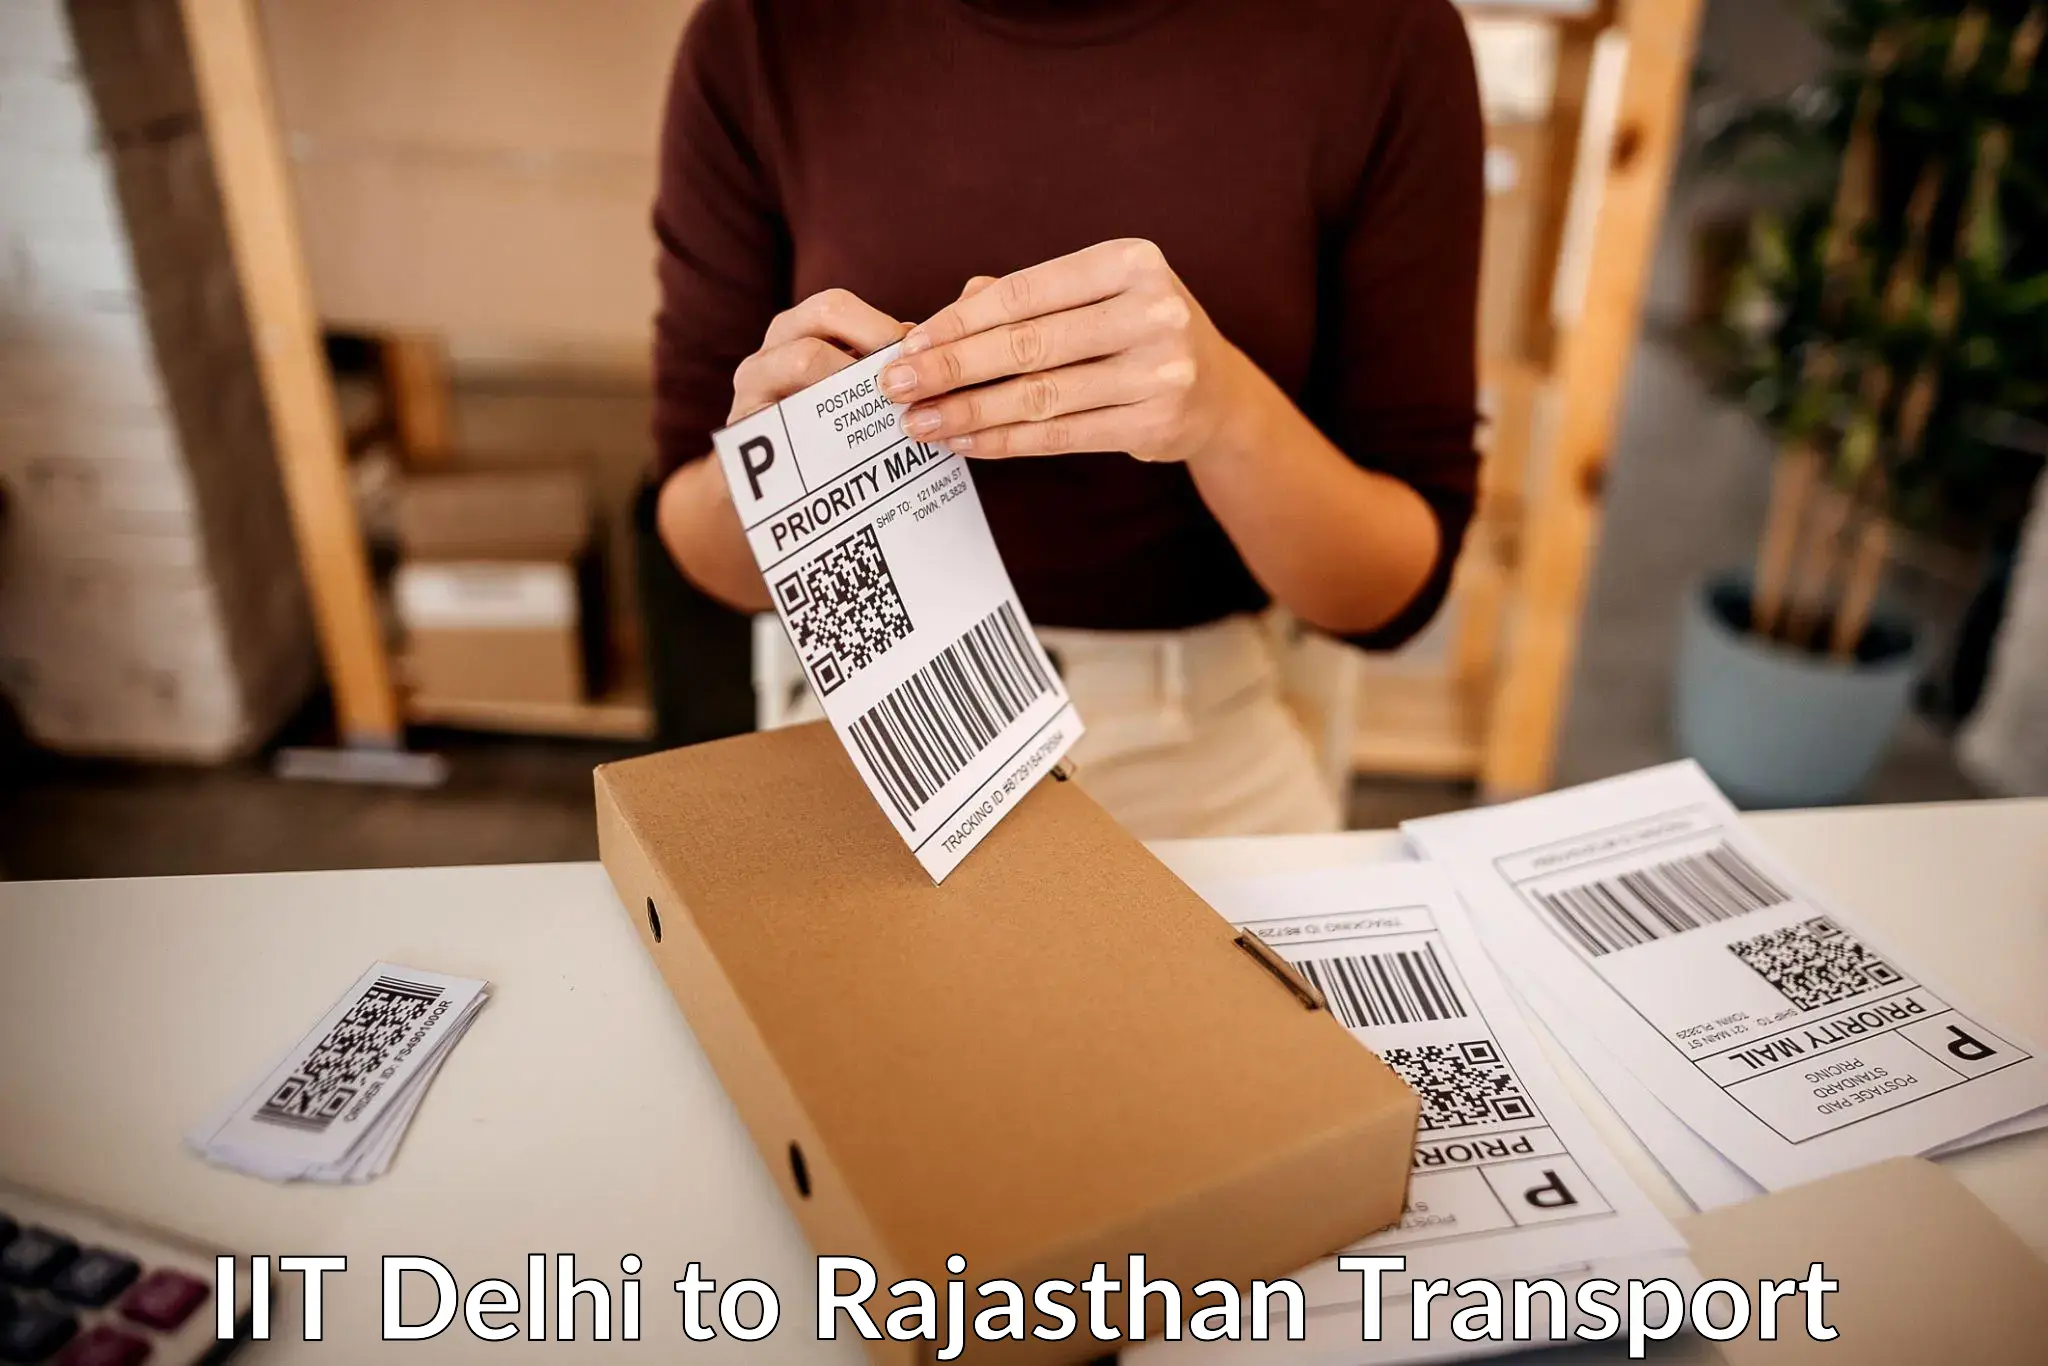 Cargo transport services IIT Delhi to Pratapgarh Rajasthan